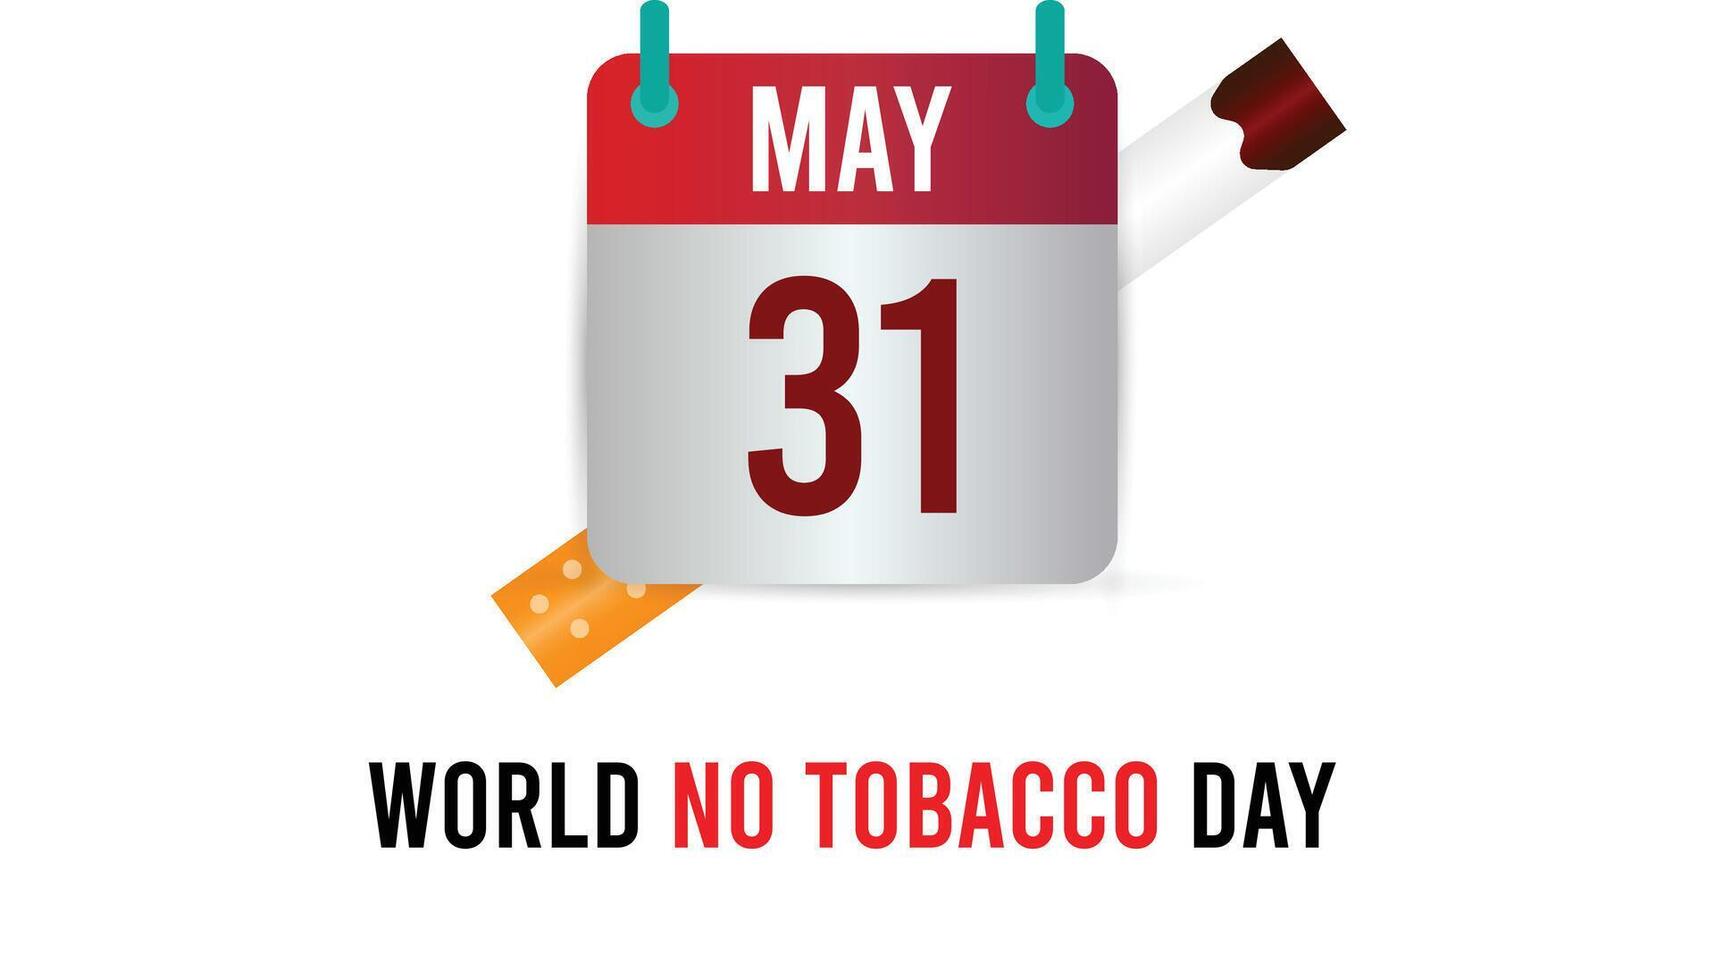 värld Nej tobak dag observerats varje år i Maj. mall för bakgrund, baner, kort, affisch med text inskrift. vektor